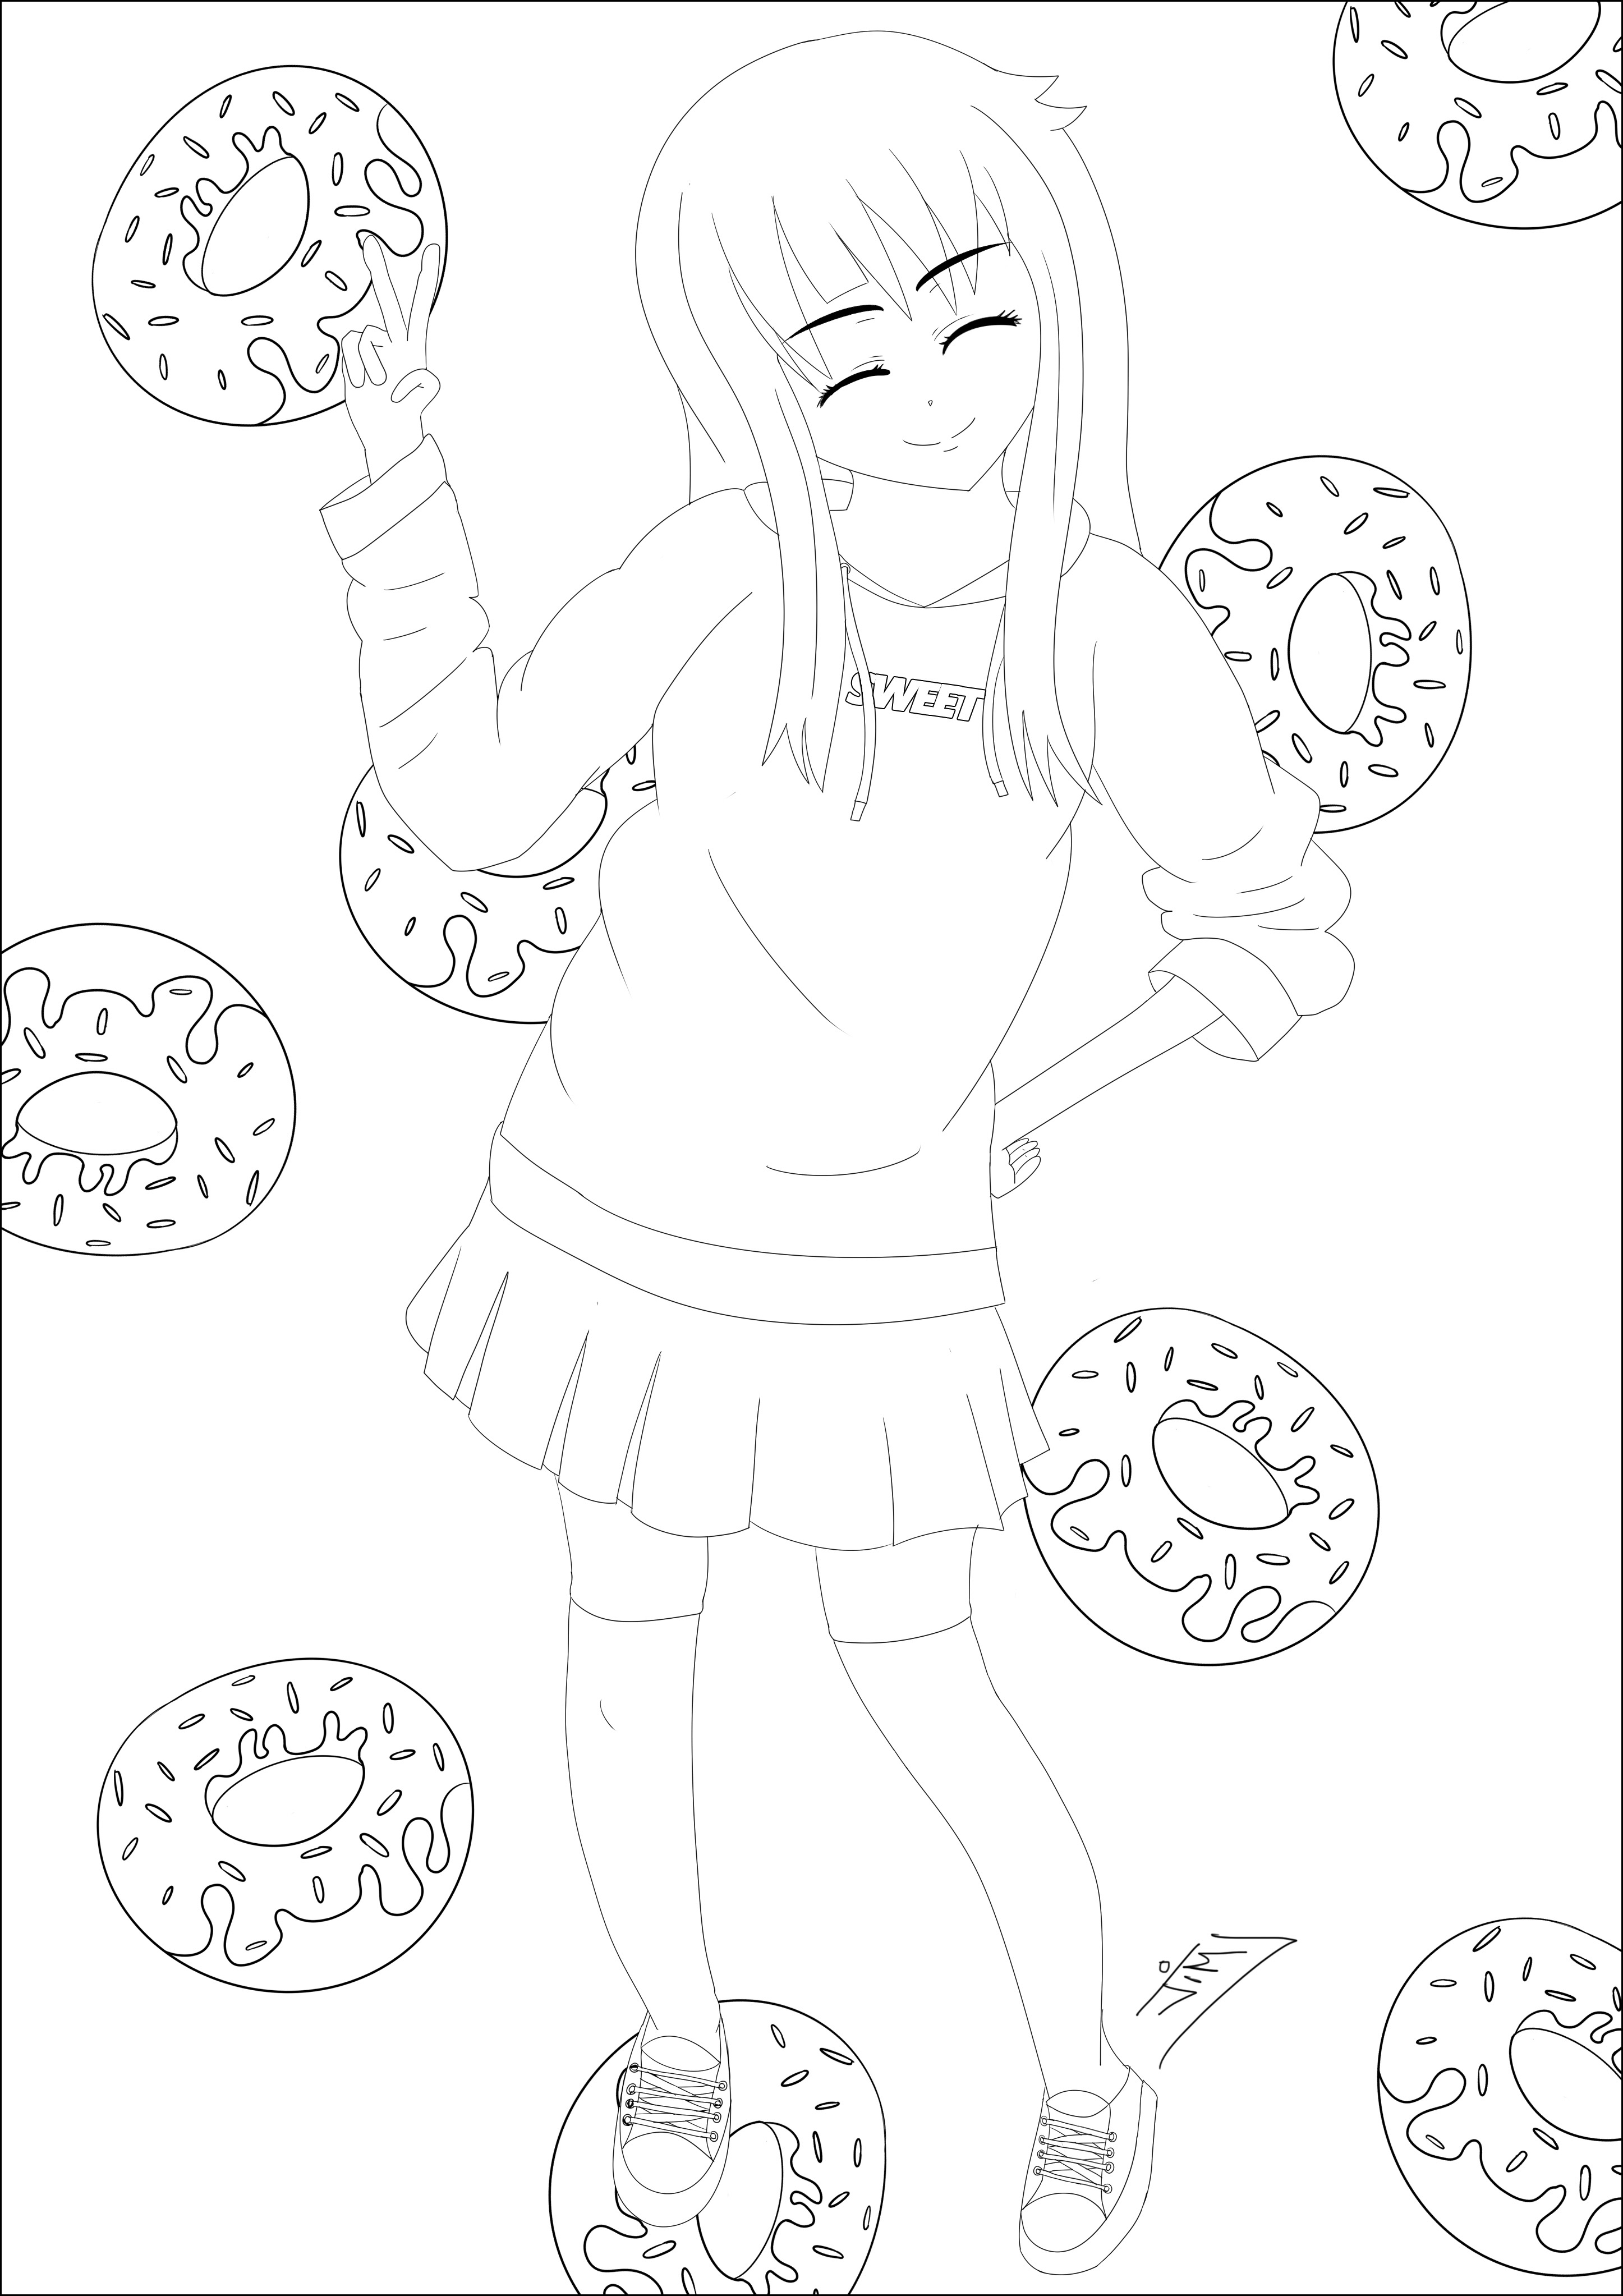 Uma rapariga e uma chuva de donuts. Um desenho muito ao estilo Manga / Anime